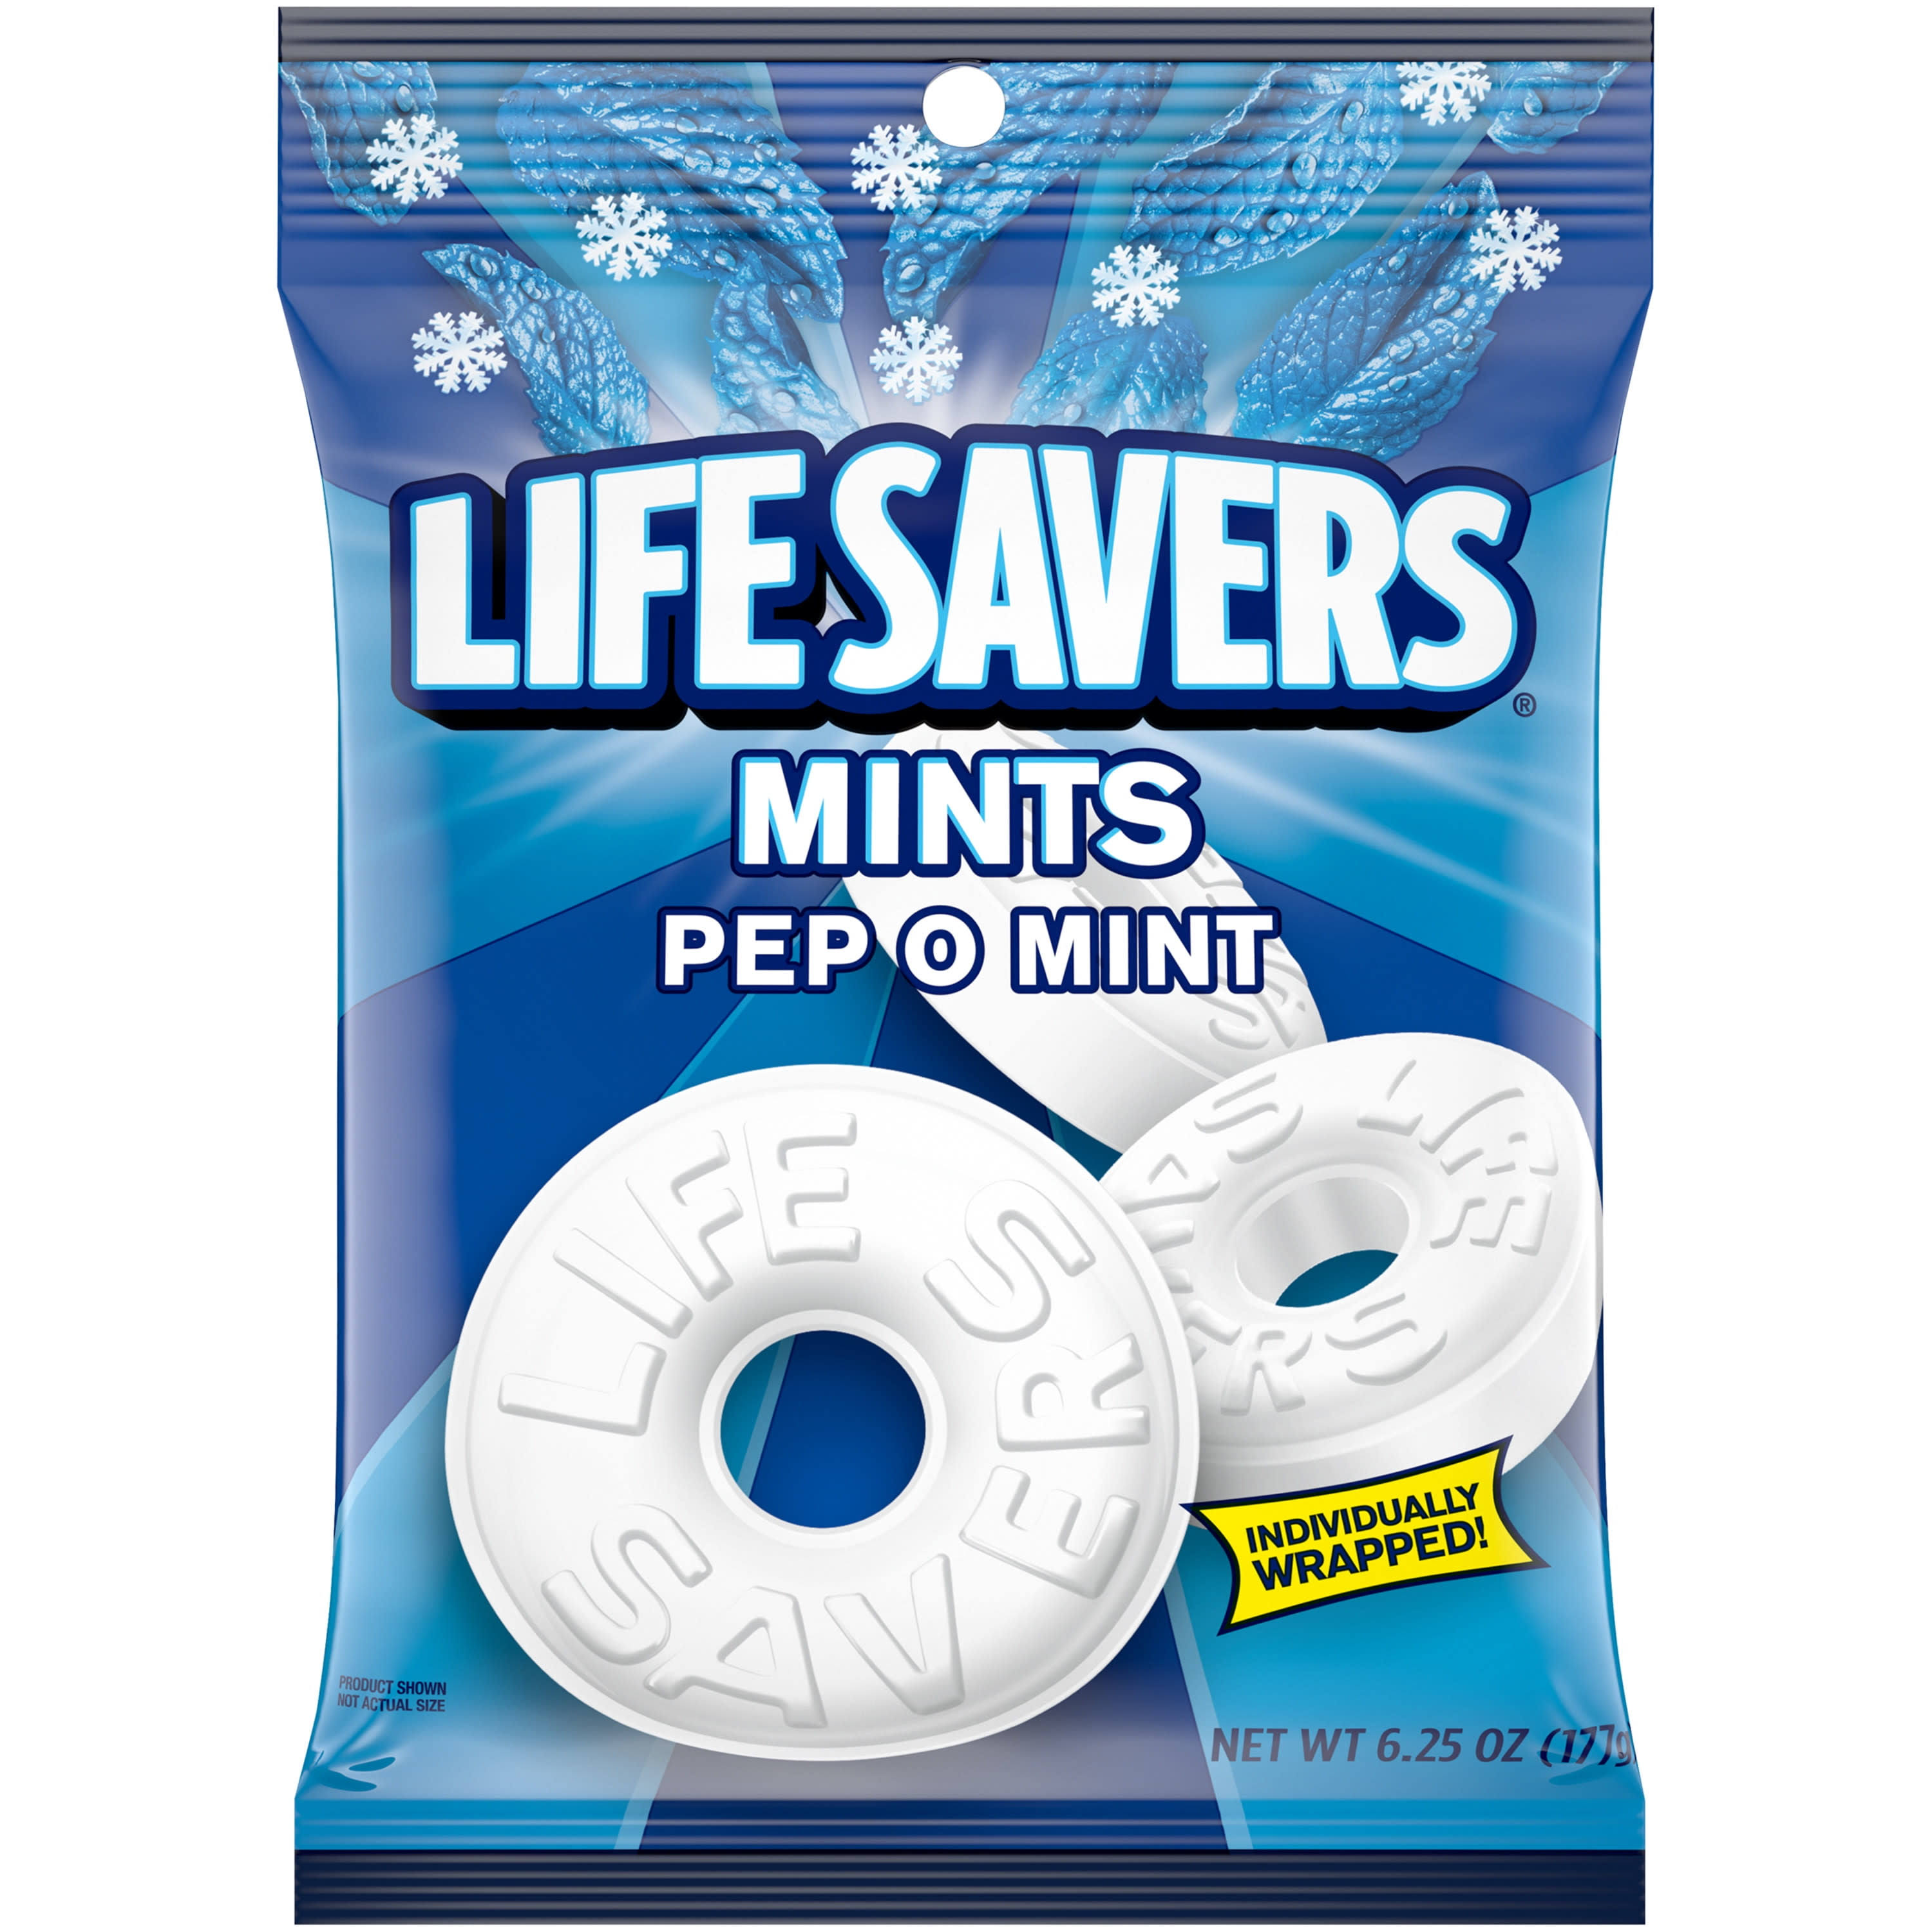 Life Savers Pep-O-Mint - 6.25oz